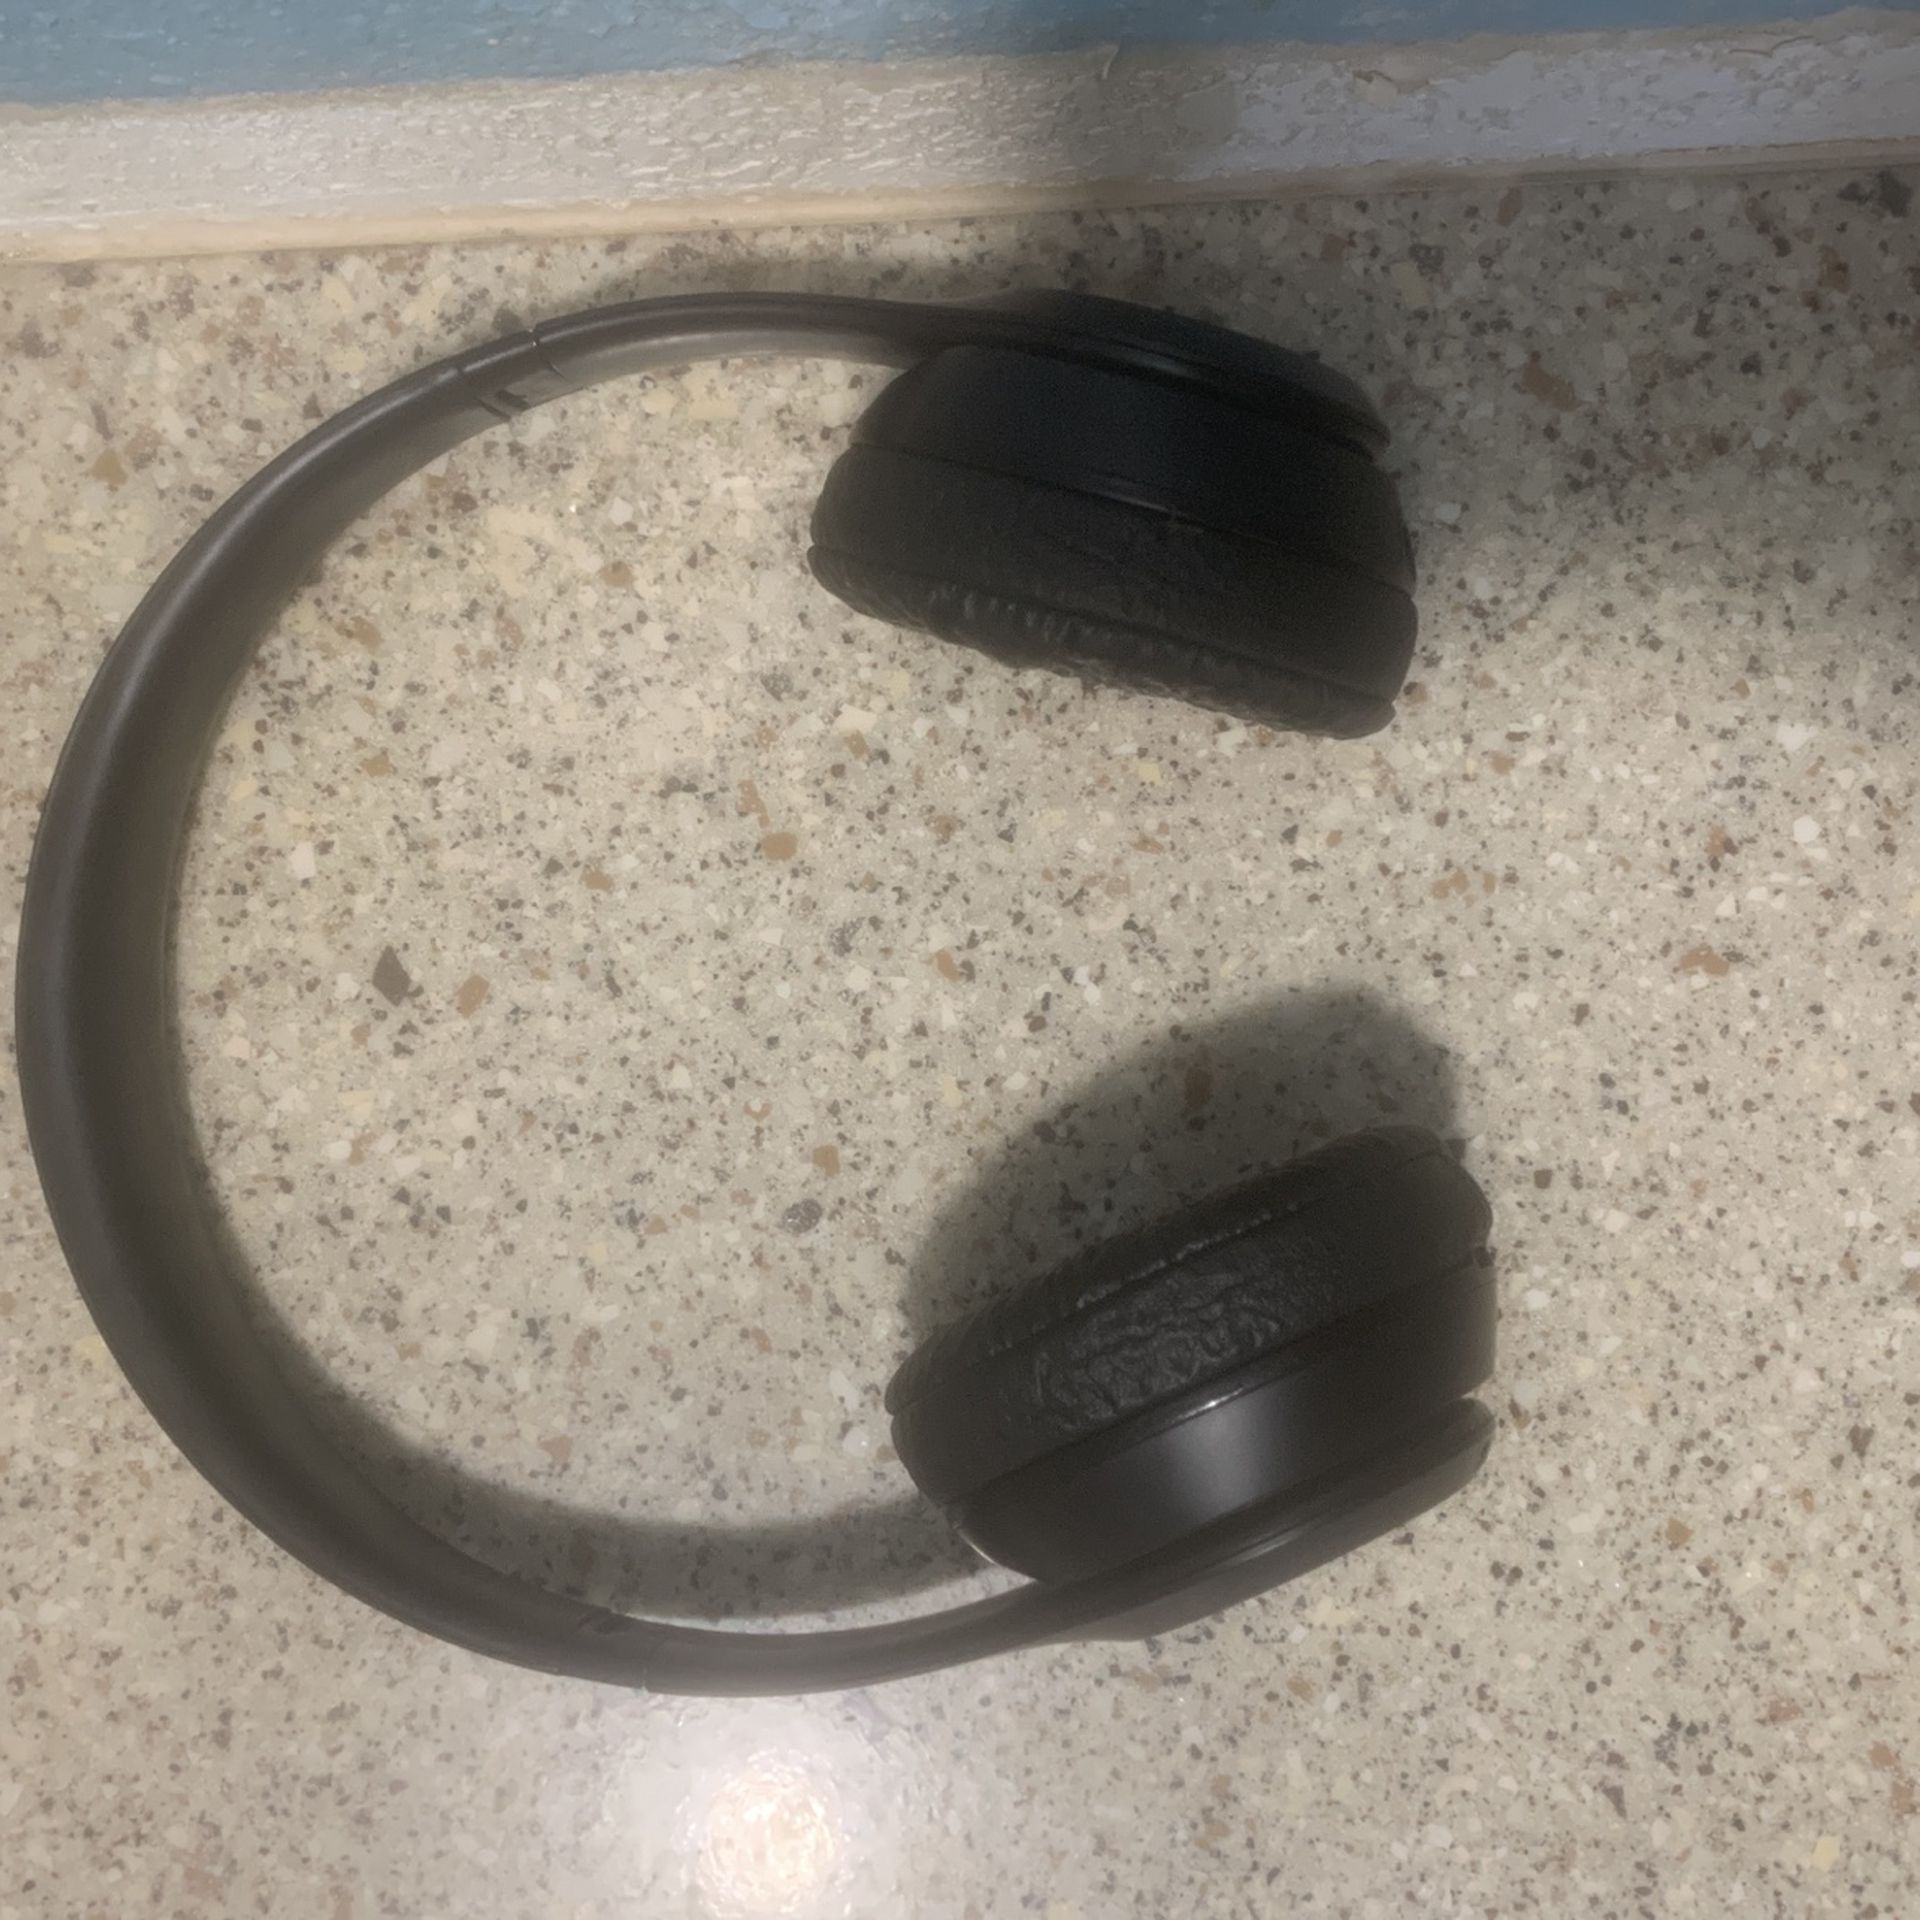 Beats by Dr. Dre Solo3 Wireless On-Ear Headphones - Black 